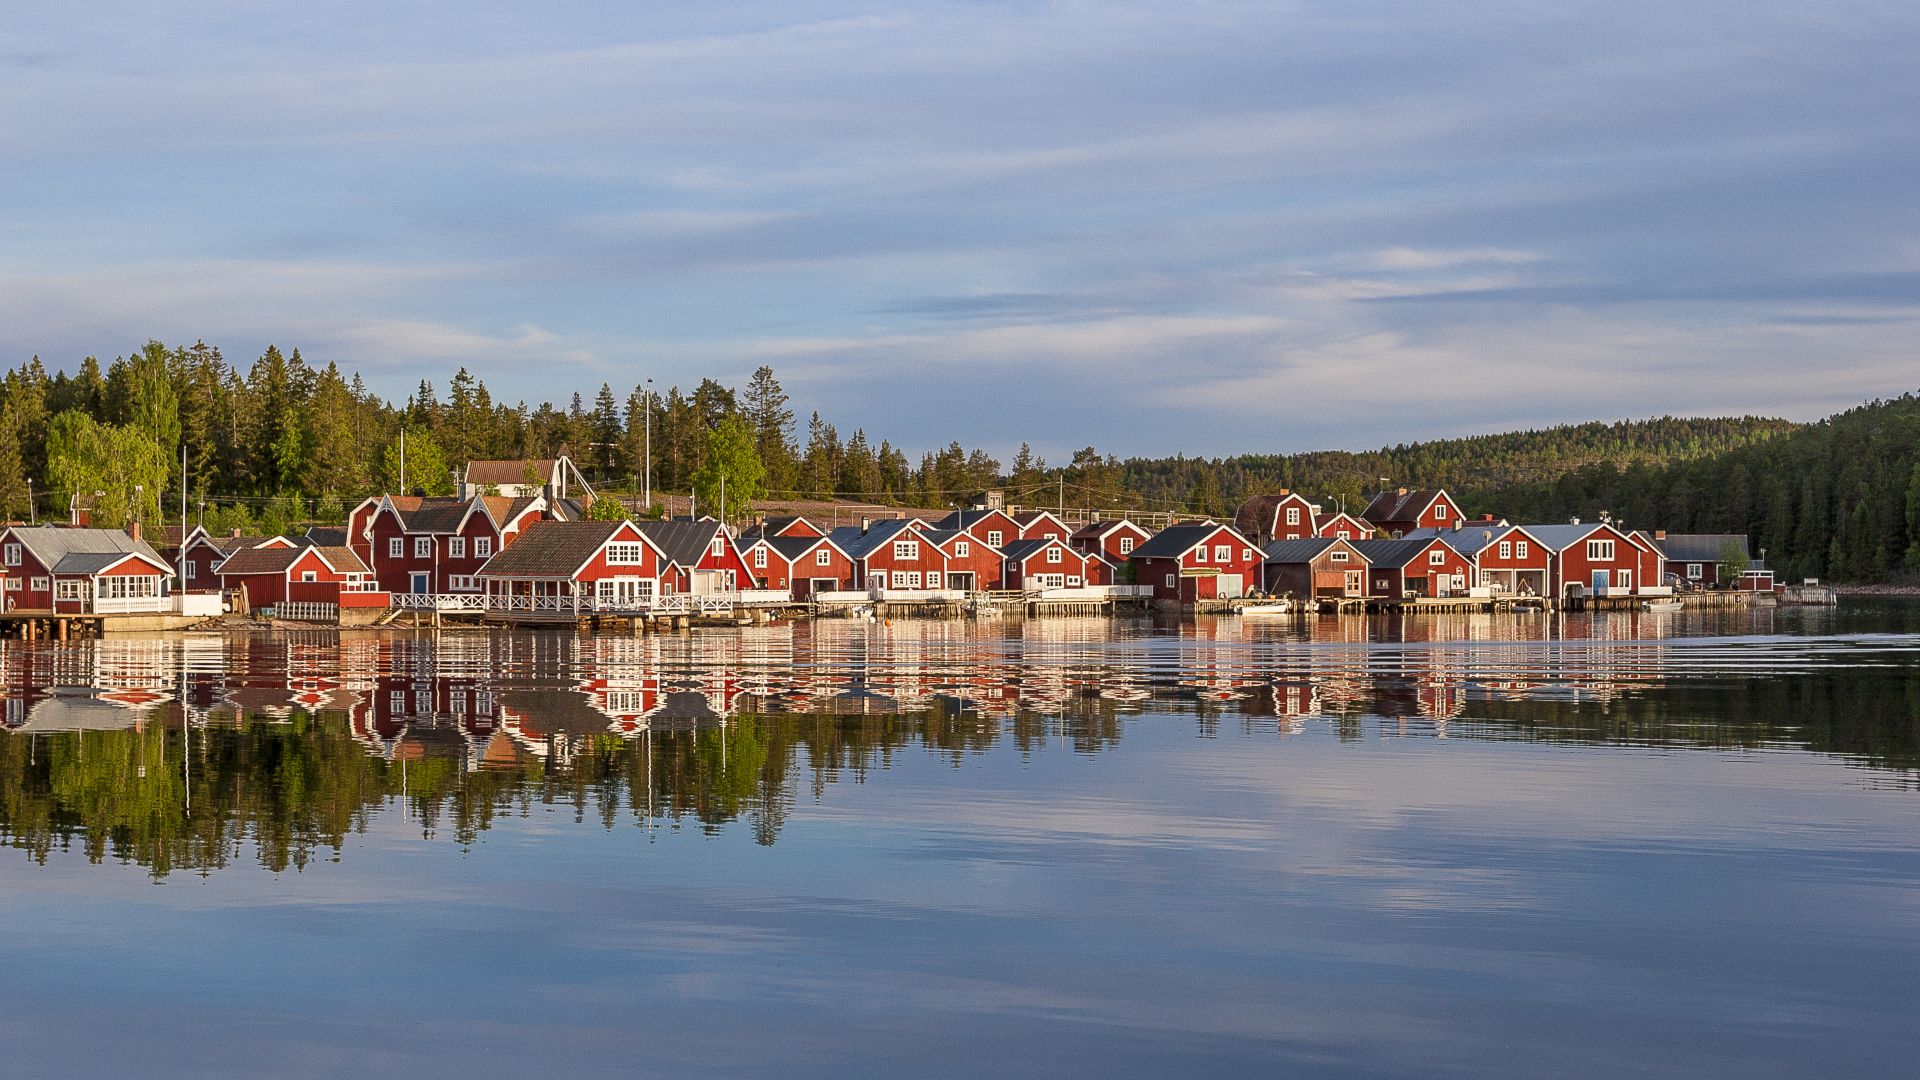 røde huse ved solnedgang i fiskerlandsbyen Norfaellsviken, Höga Kusten, Sverige